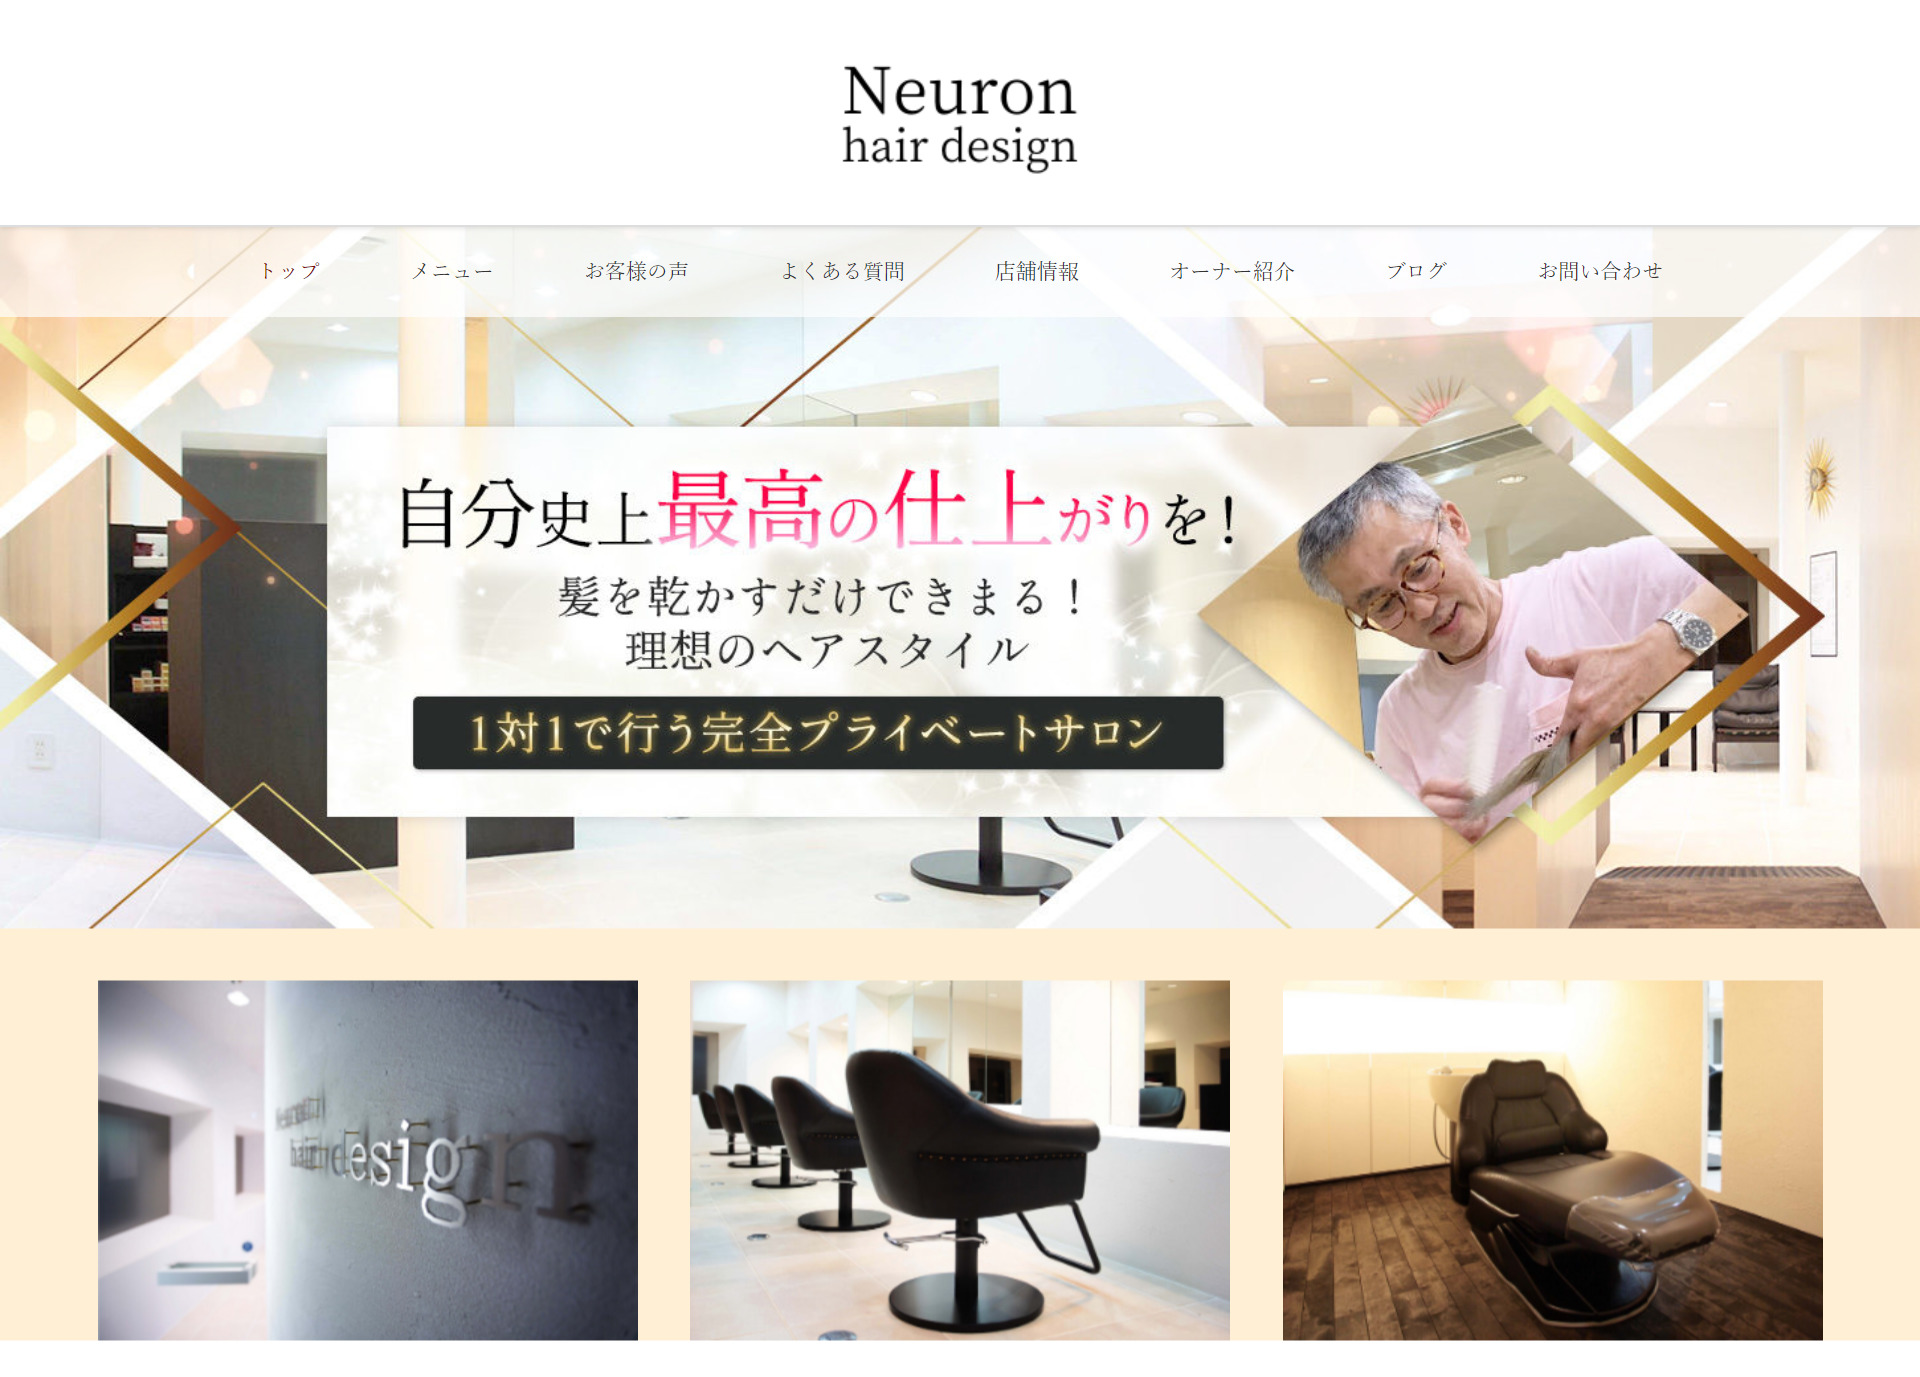 広島市安佐北区の美容室『Neuron hair design』様のホームページ作成